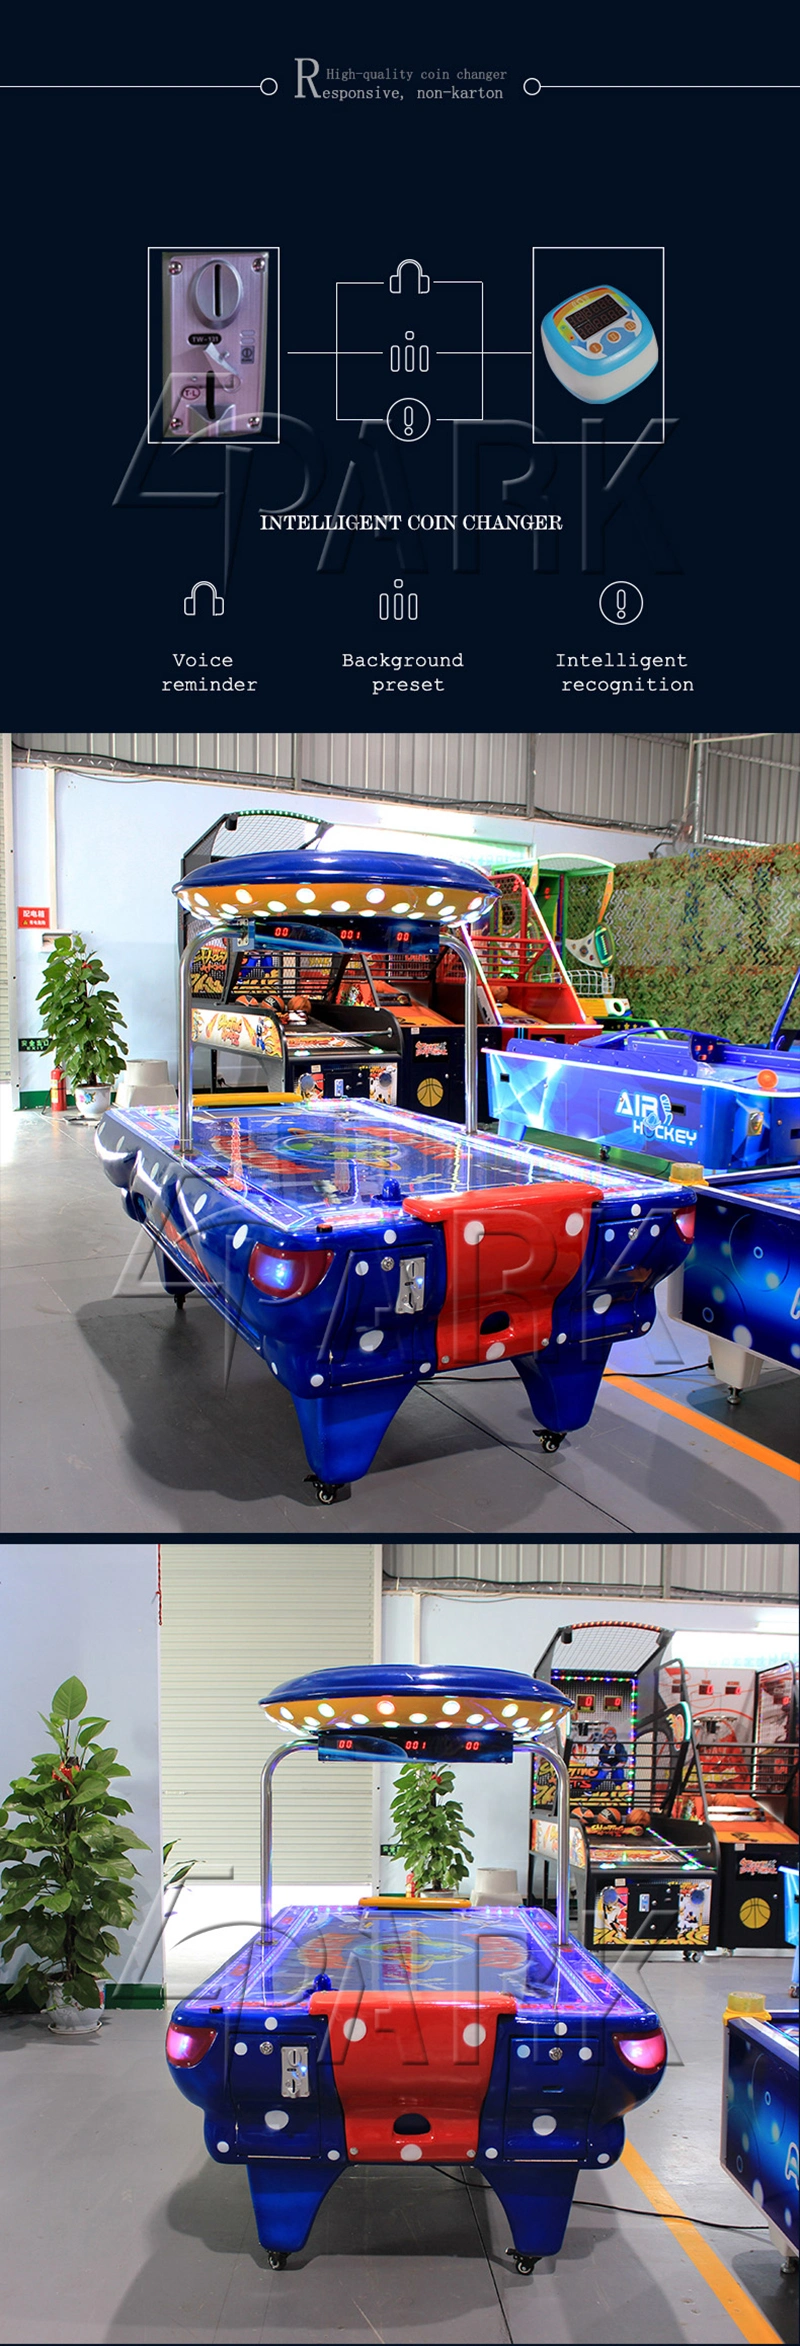 Tabletop Arcade Games Hockey Table Indoor Outdoor Kids Indoor Sport Game Machine